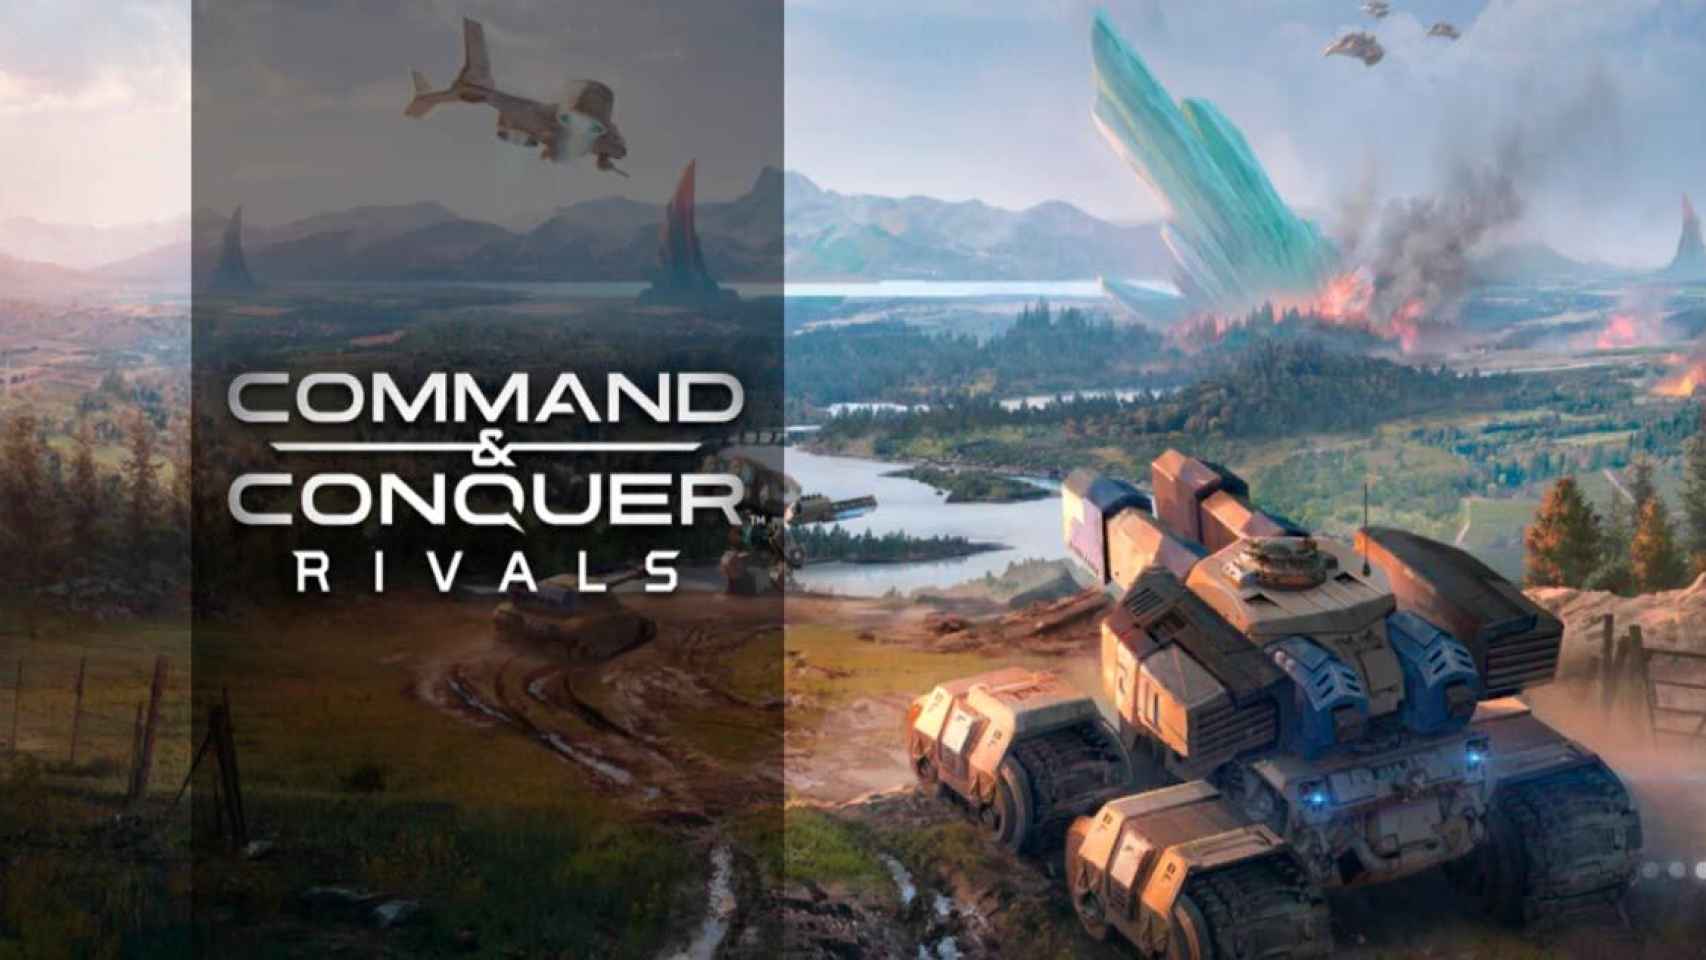 Command & Conquer: Rivals, descarga ya el famoso juego de estrategia [APK]